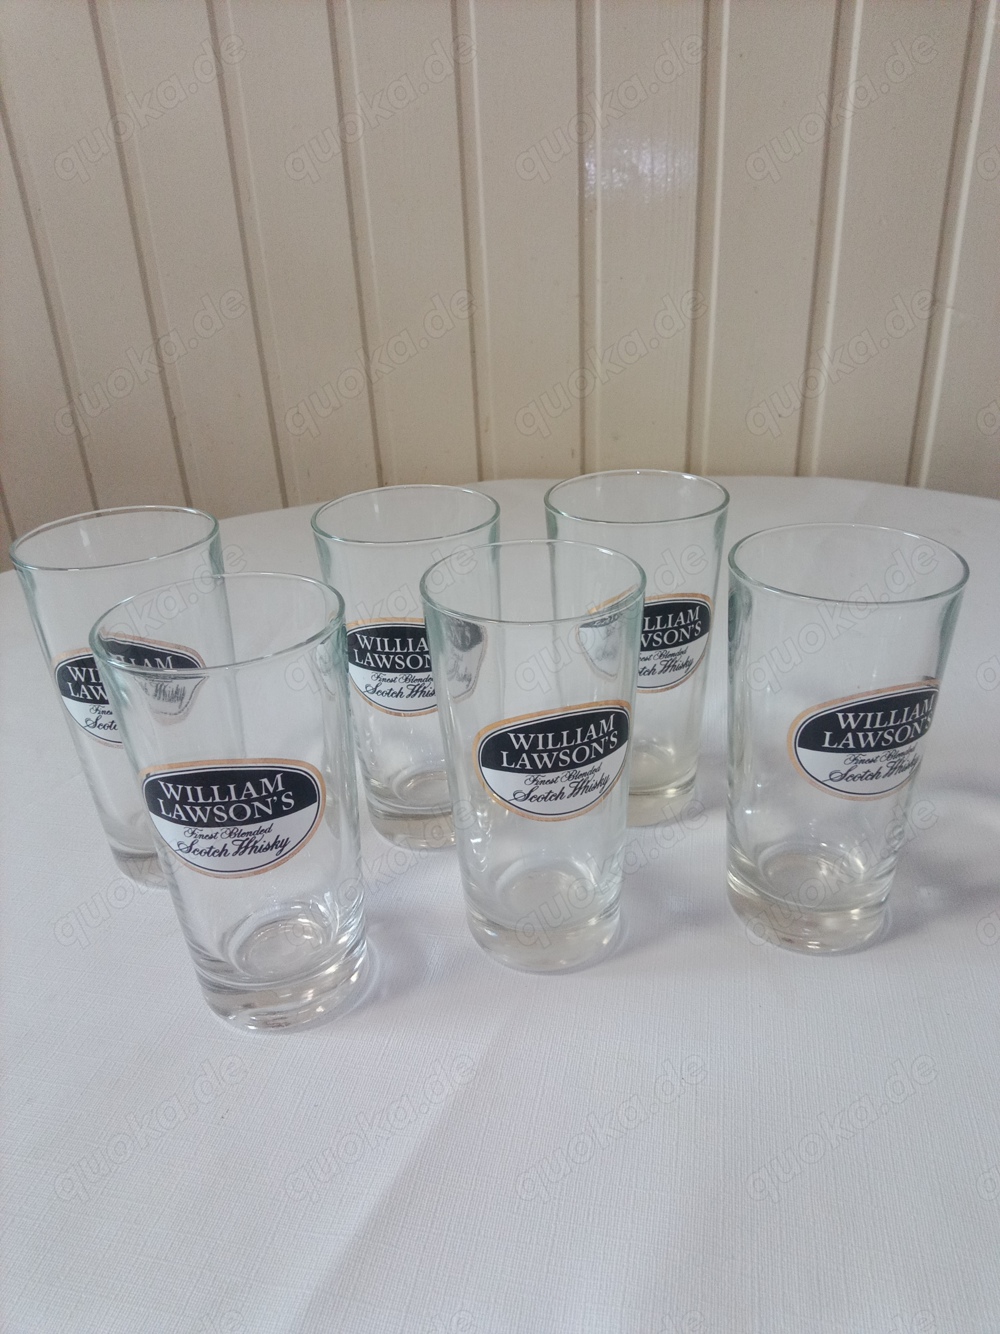  6 Whisky Gläser William Lawson s